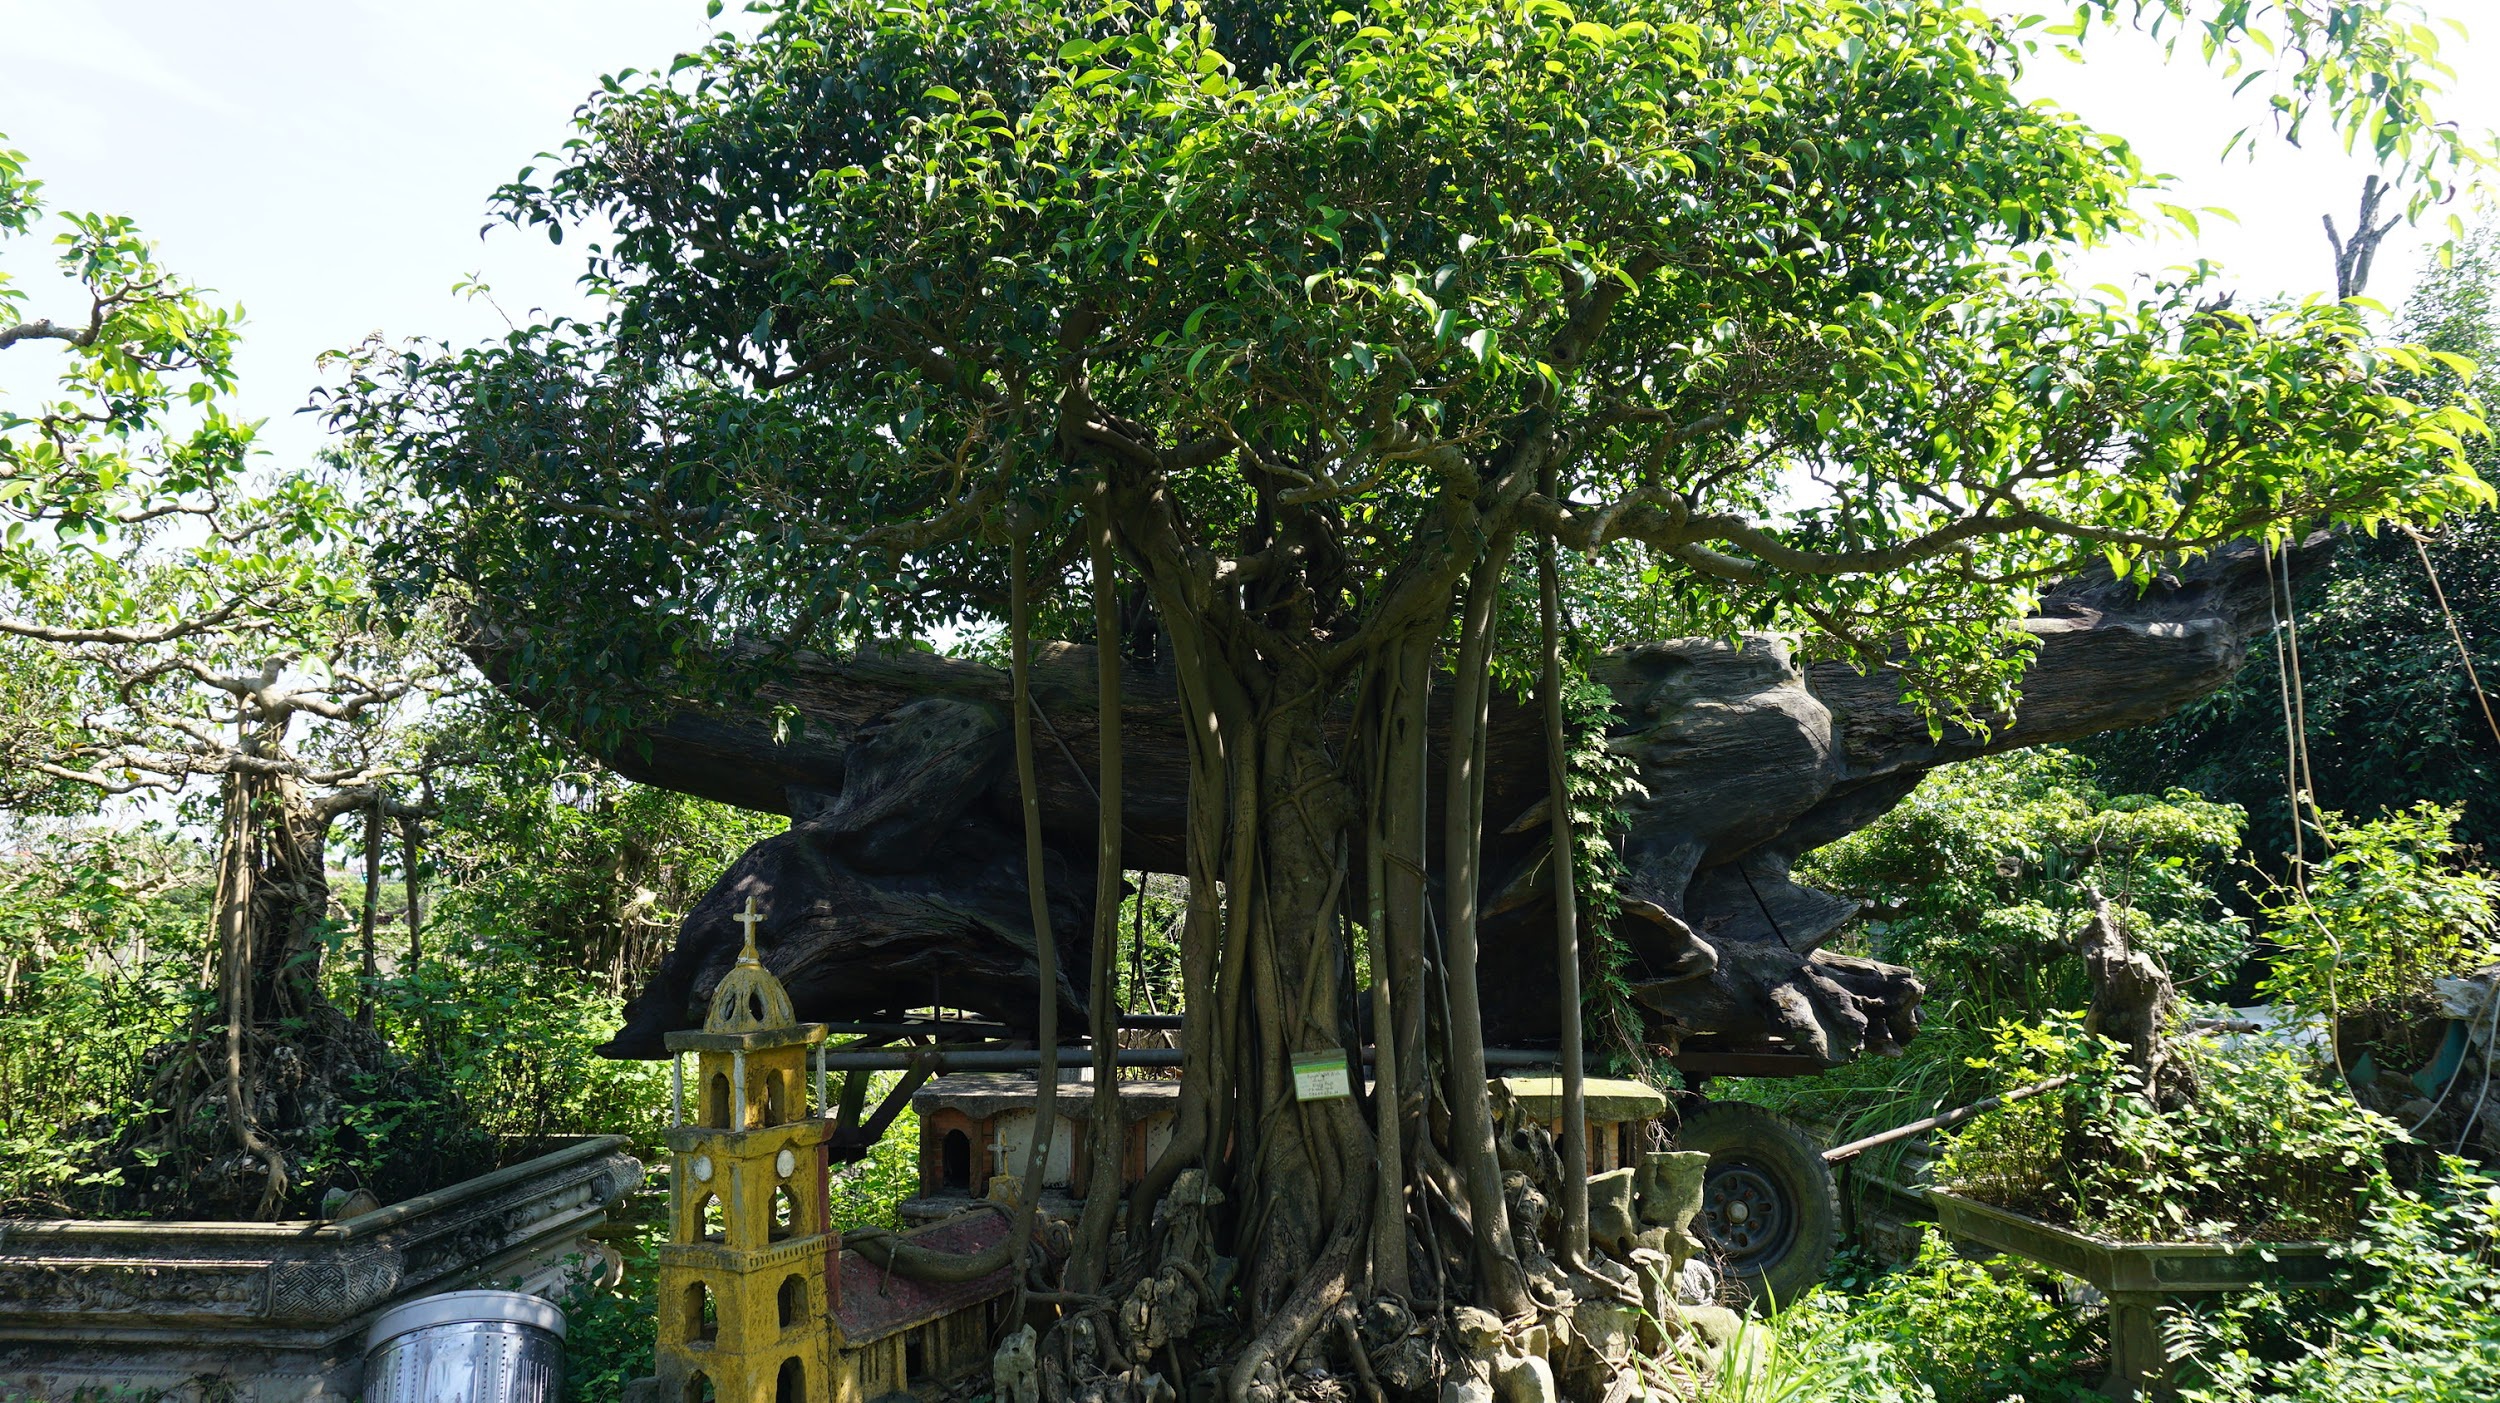 Khu vườn bỏ hoang toàn 'siêu cây' bạc tỷ của đại gia nức tiếng một thời Hang-chuc-goc-co-thu-dang-than-dang-phat-gia-tram-ty-bo-hoang-o-ha-noidocx-1588065445385